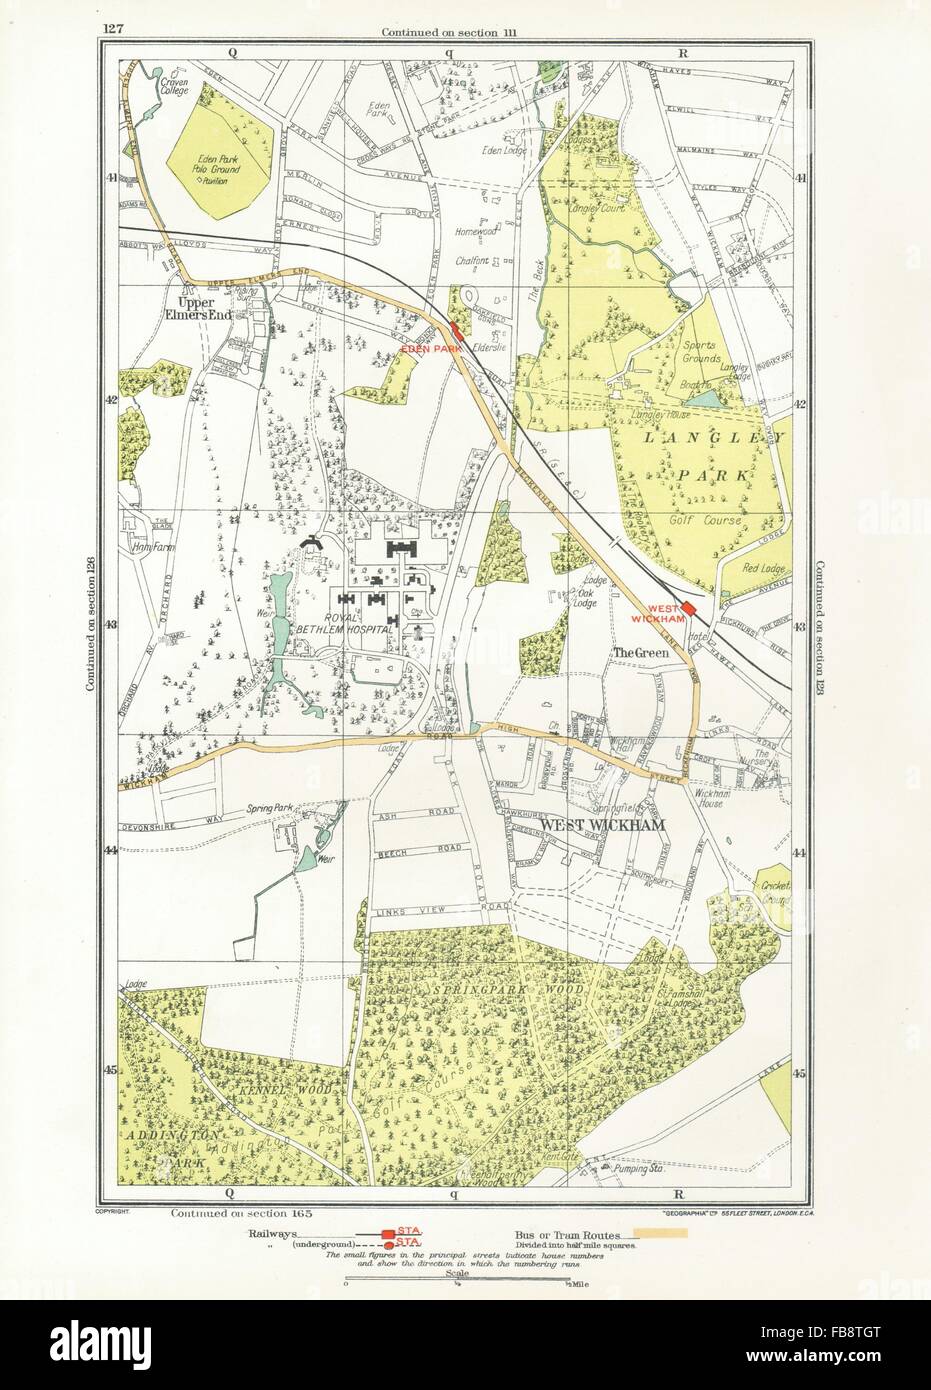 Londres. Upper Elmers End, West Wickham, Eden Park, parc, printemps 1933 carte ancienne Banque D'Images